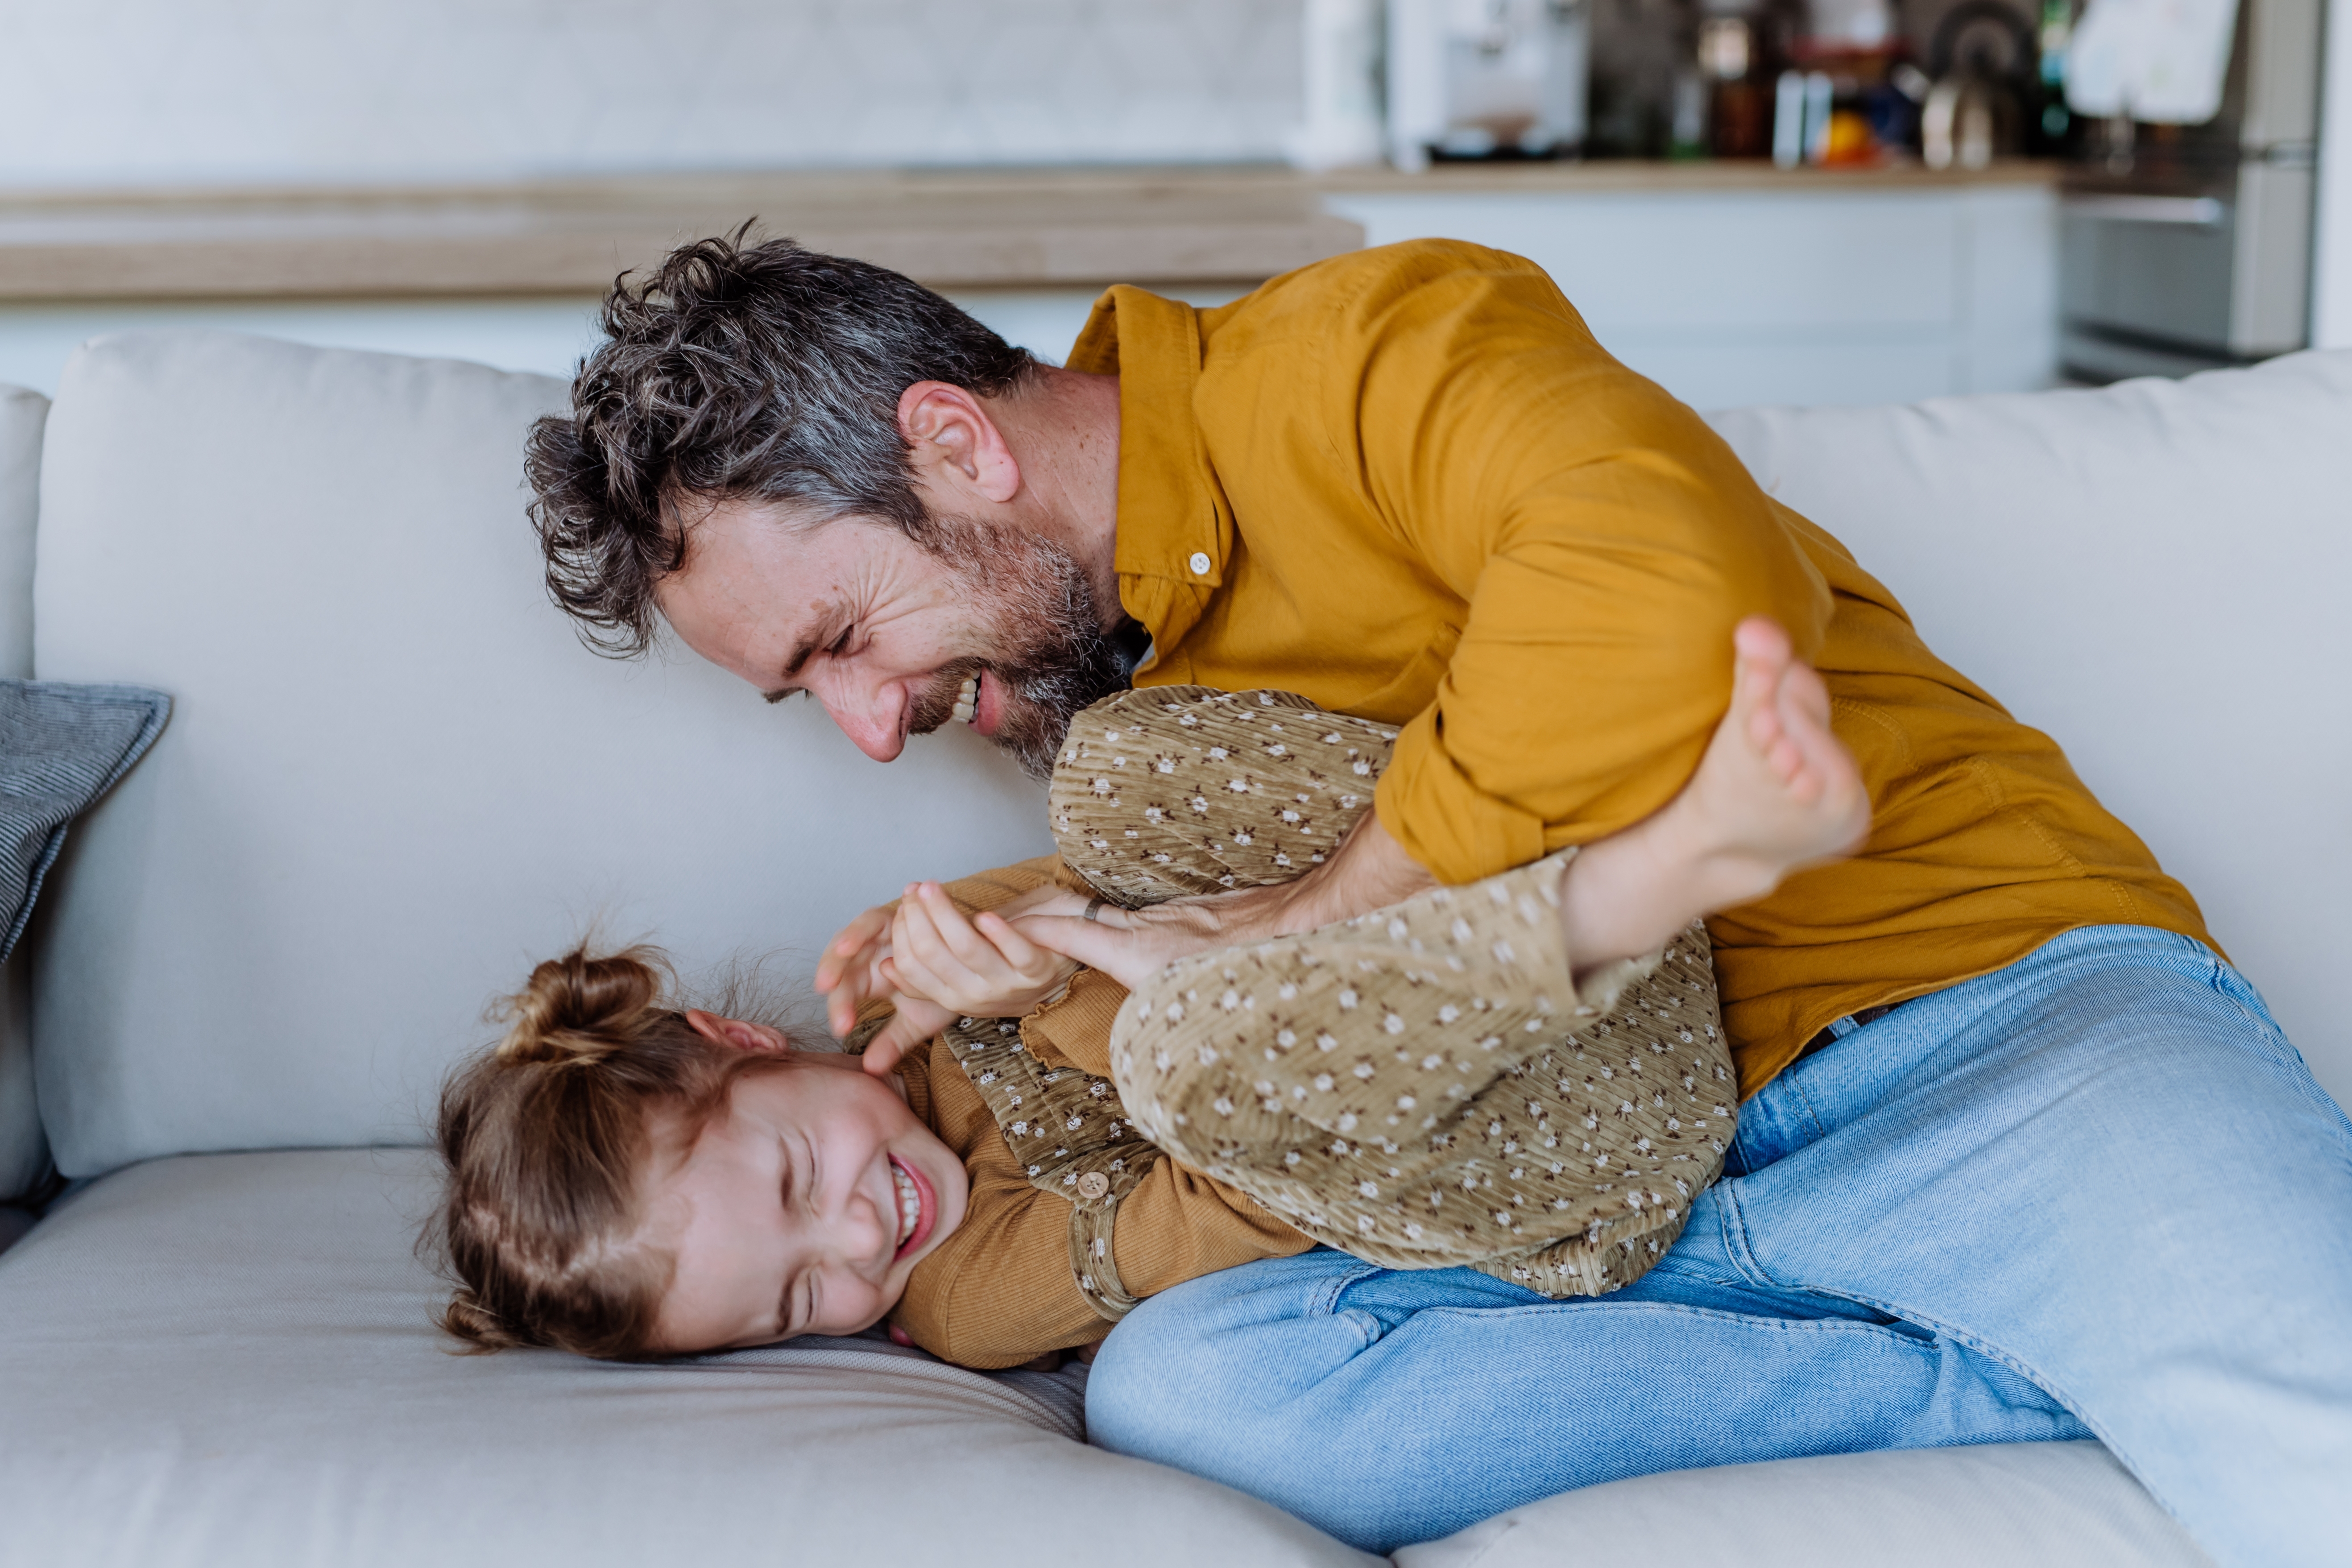 Père et fille ayant un moment de complicité. | Source : Shutterstock